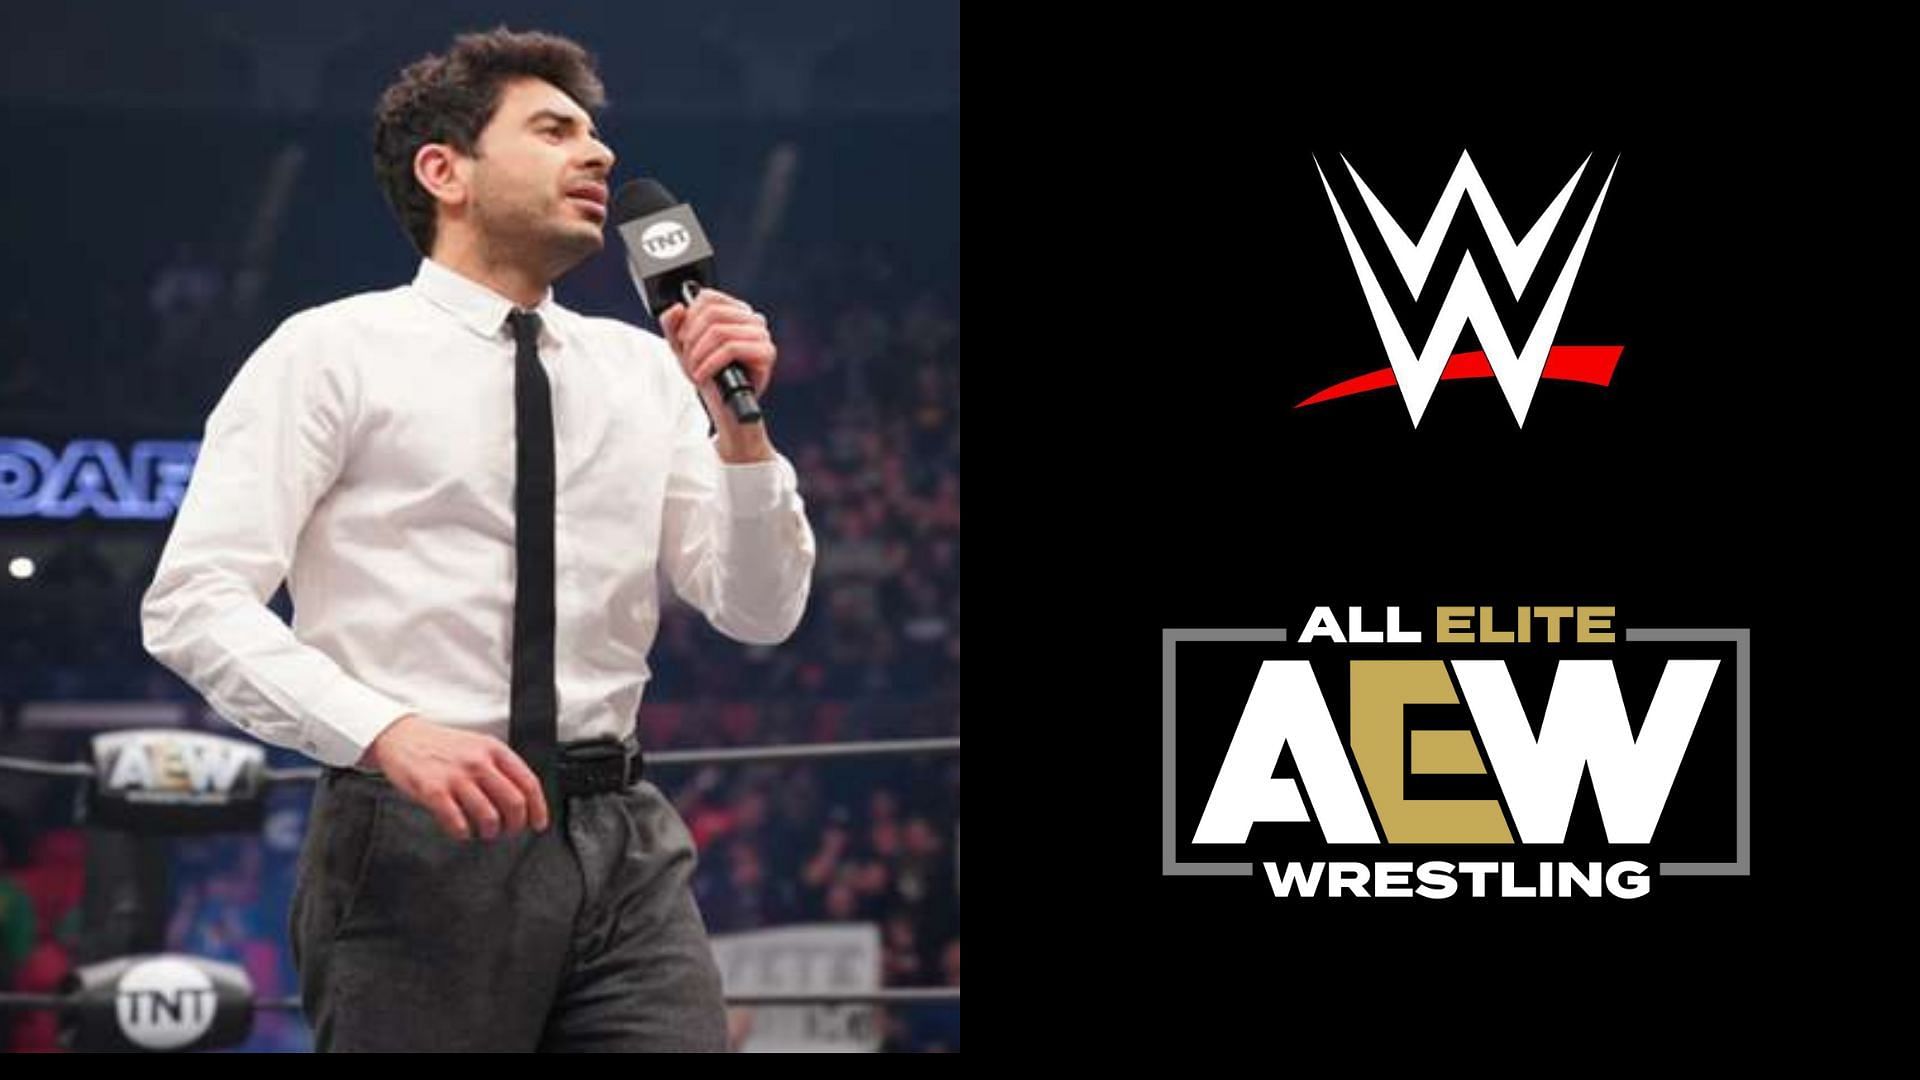 Tony Khan is the president of All Elite Wrestling